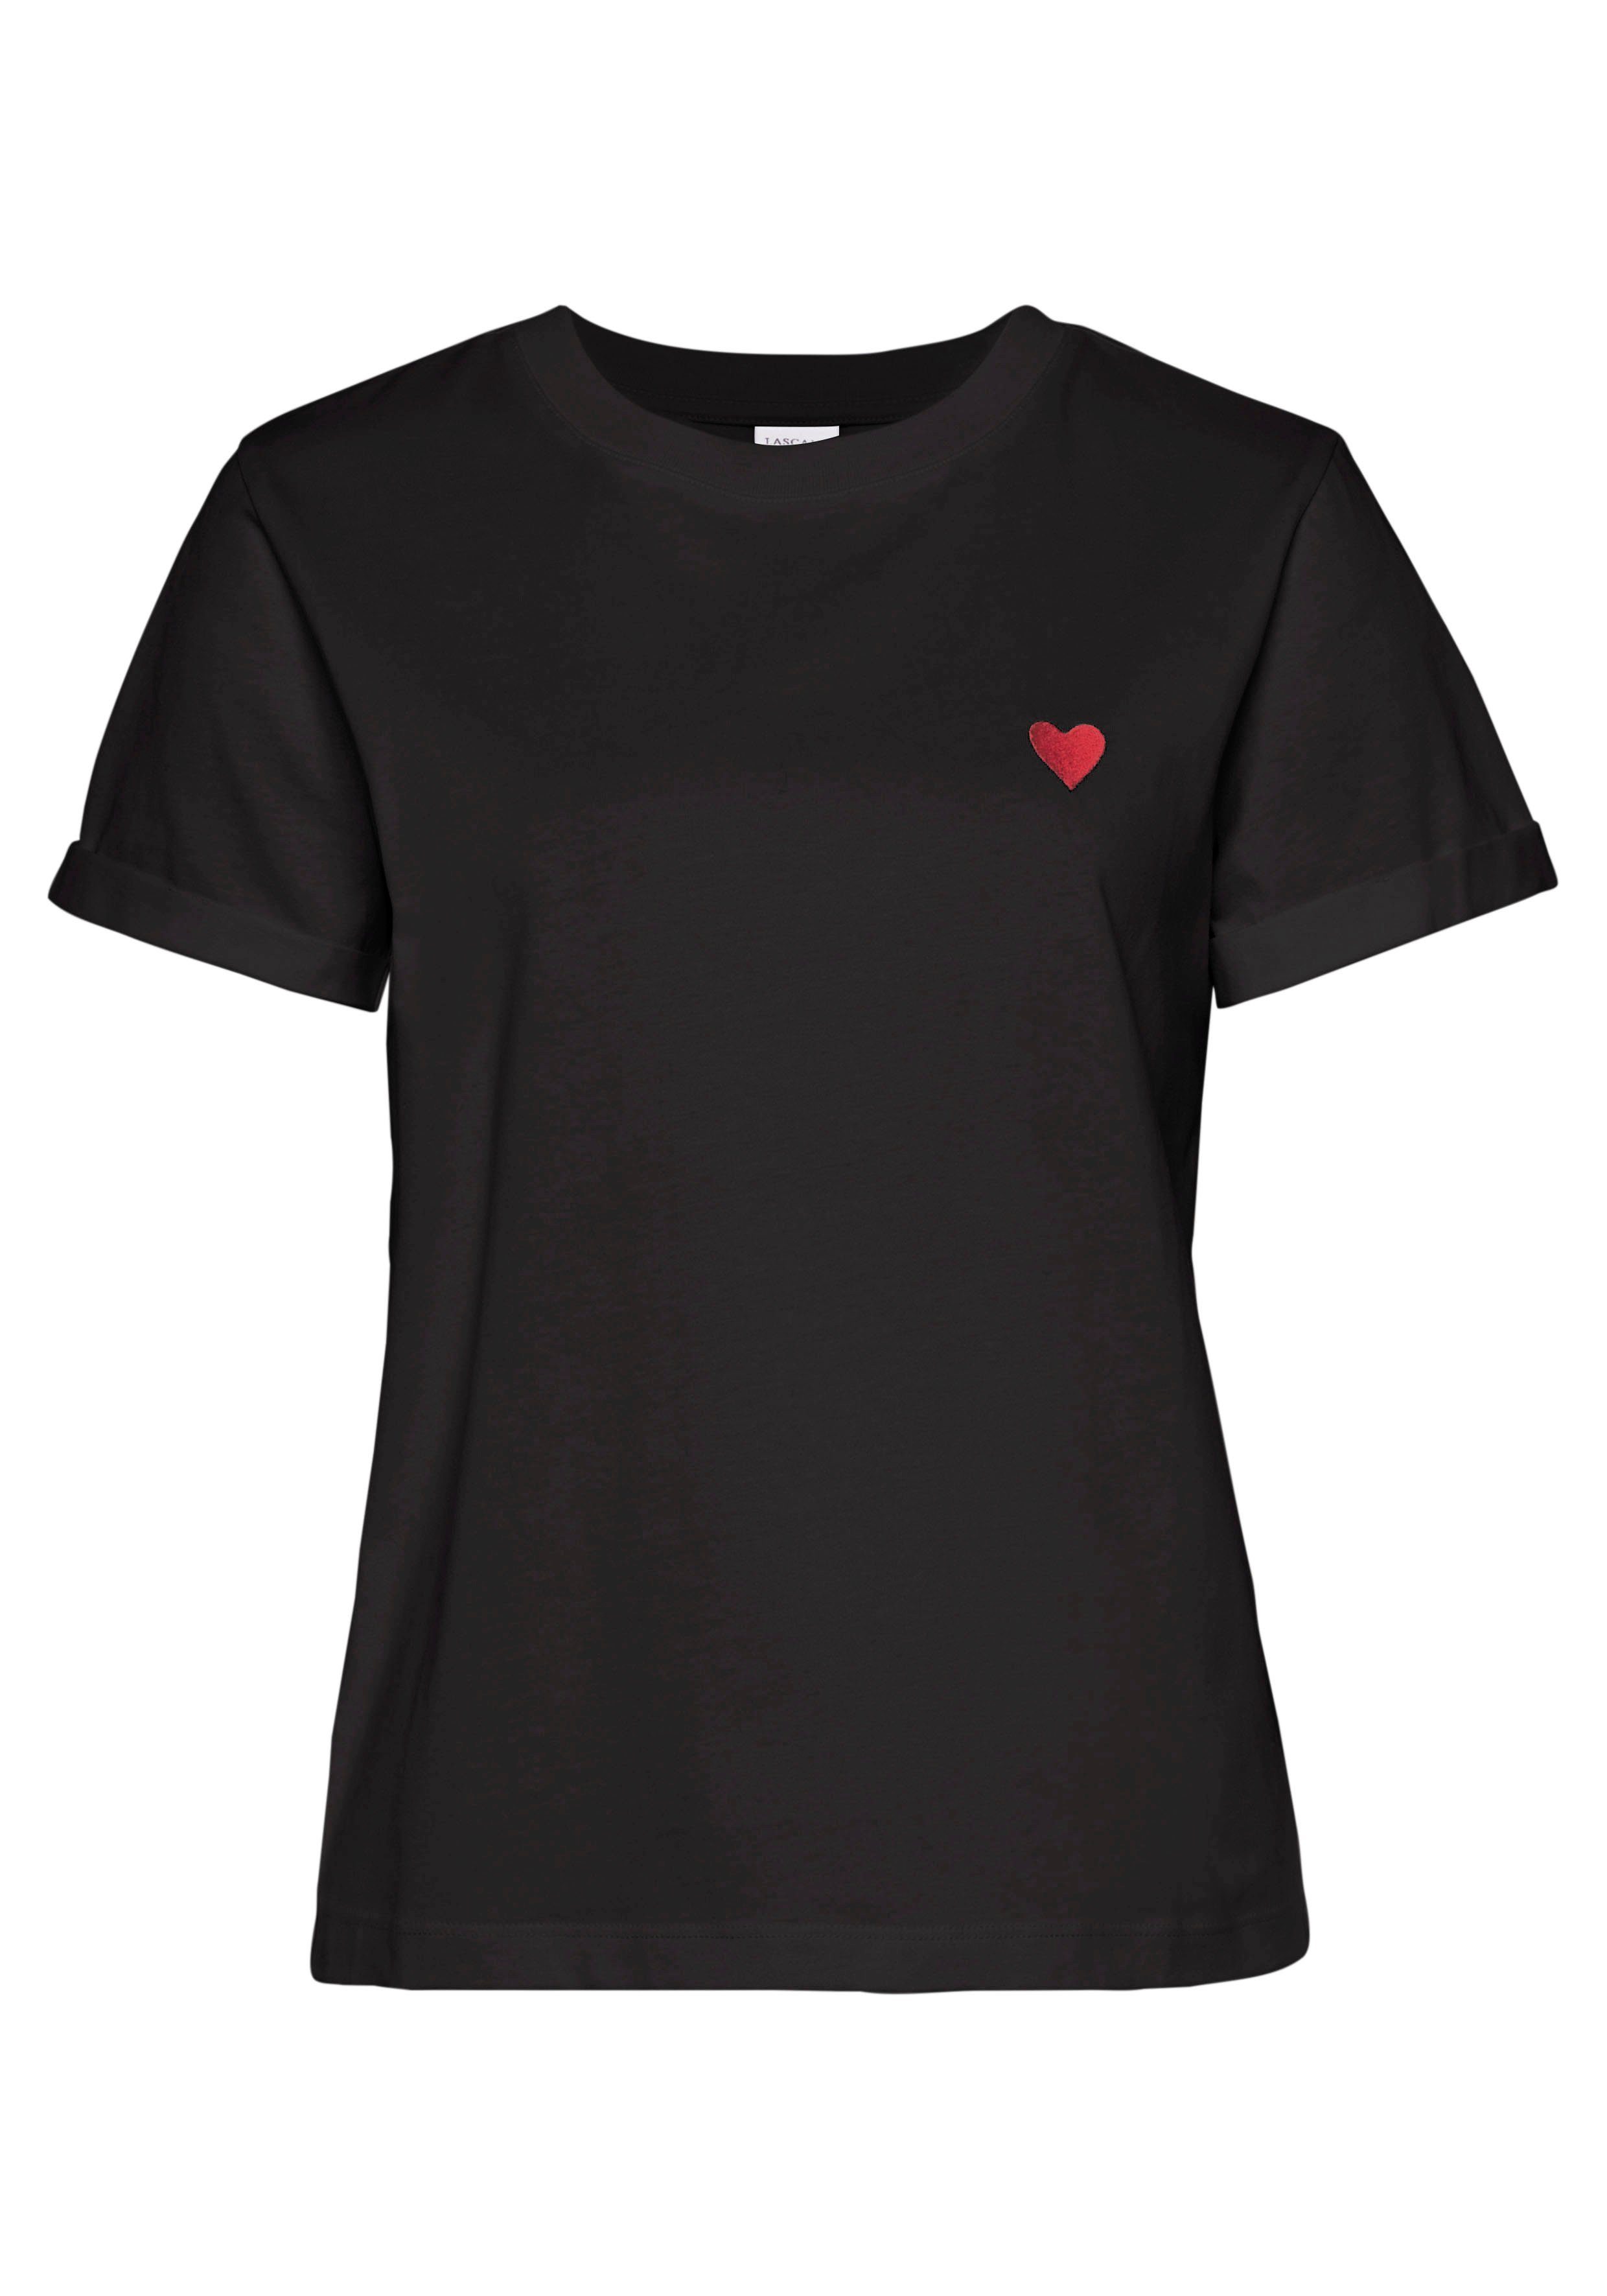 mit T-Shirt aus LASCANA Baumwolle süßer schwarz Kurzarmshirt Herz-Stickerei,